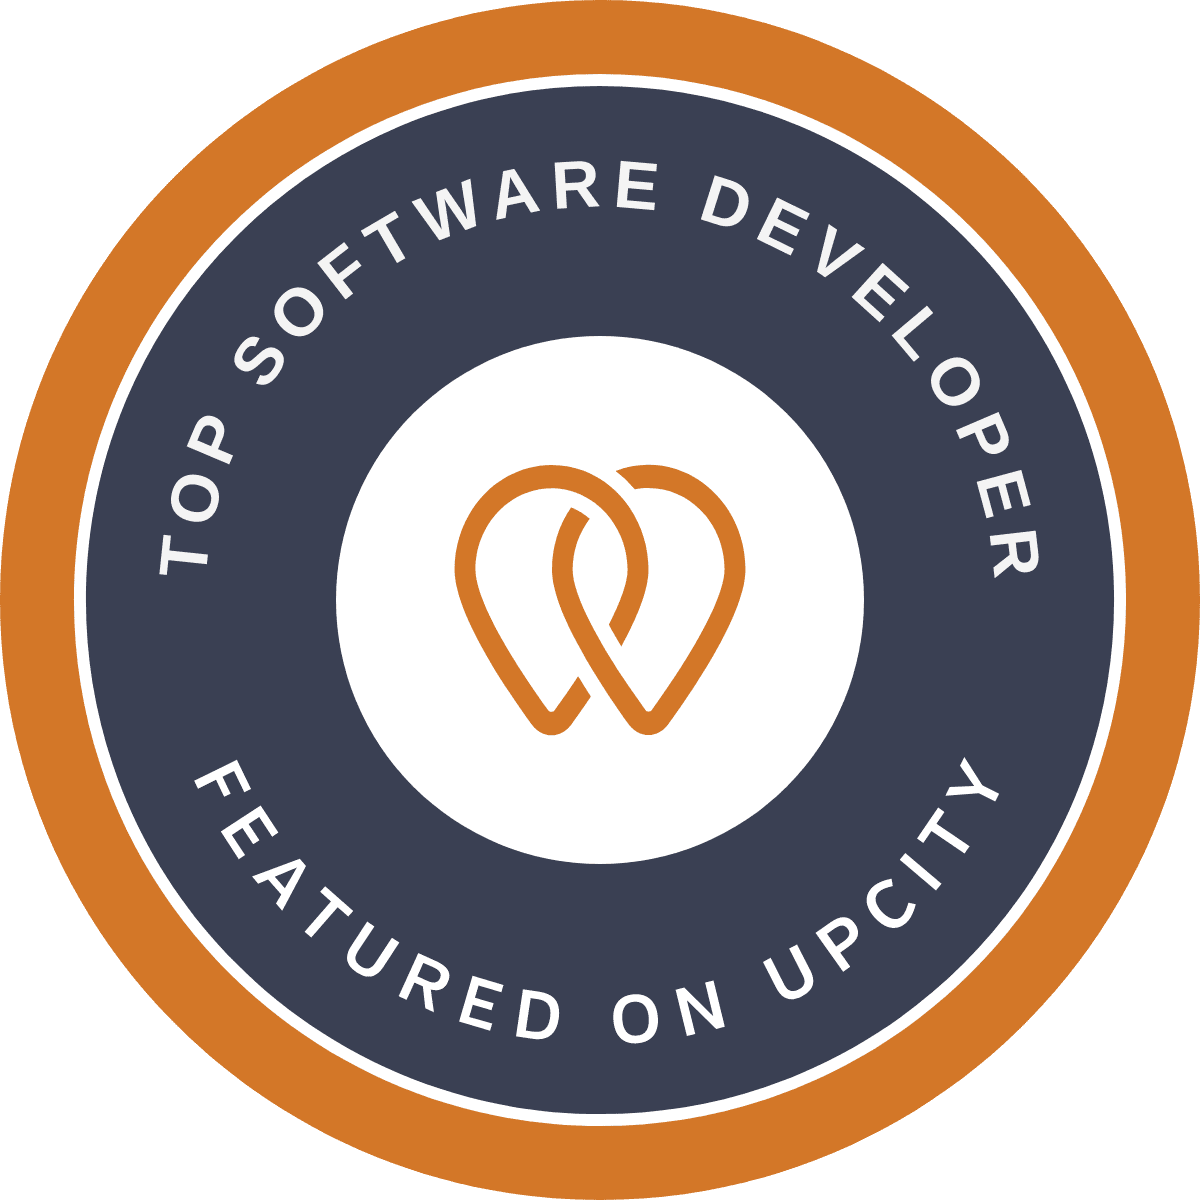 Upcity-Badge-Top-Software-Developer